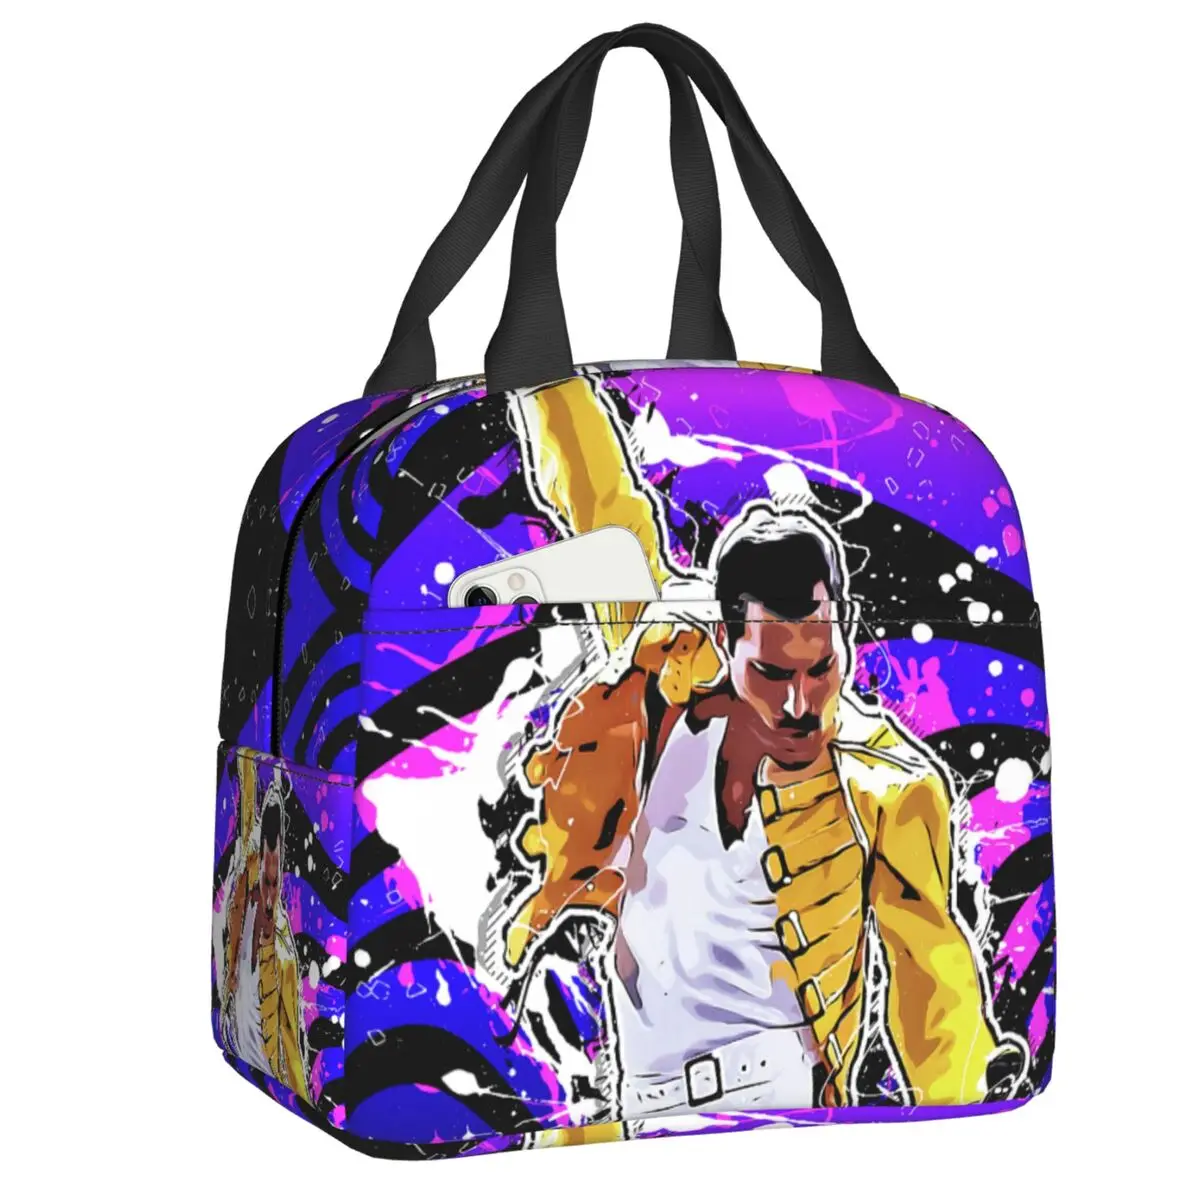 

Сумка для ланча Freddie Mercury, Женский термоохладитель, изолированный Ланч-бокс в стиле рок-музыки, Queen, для студентов, школы, работы, пикника